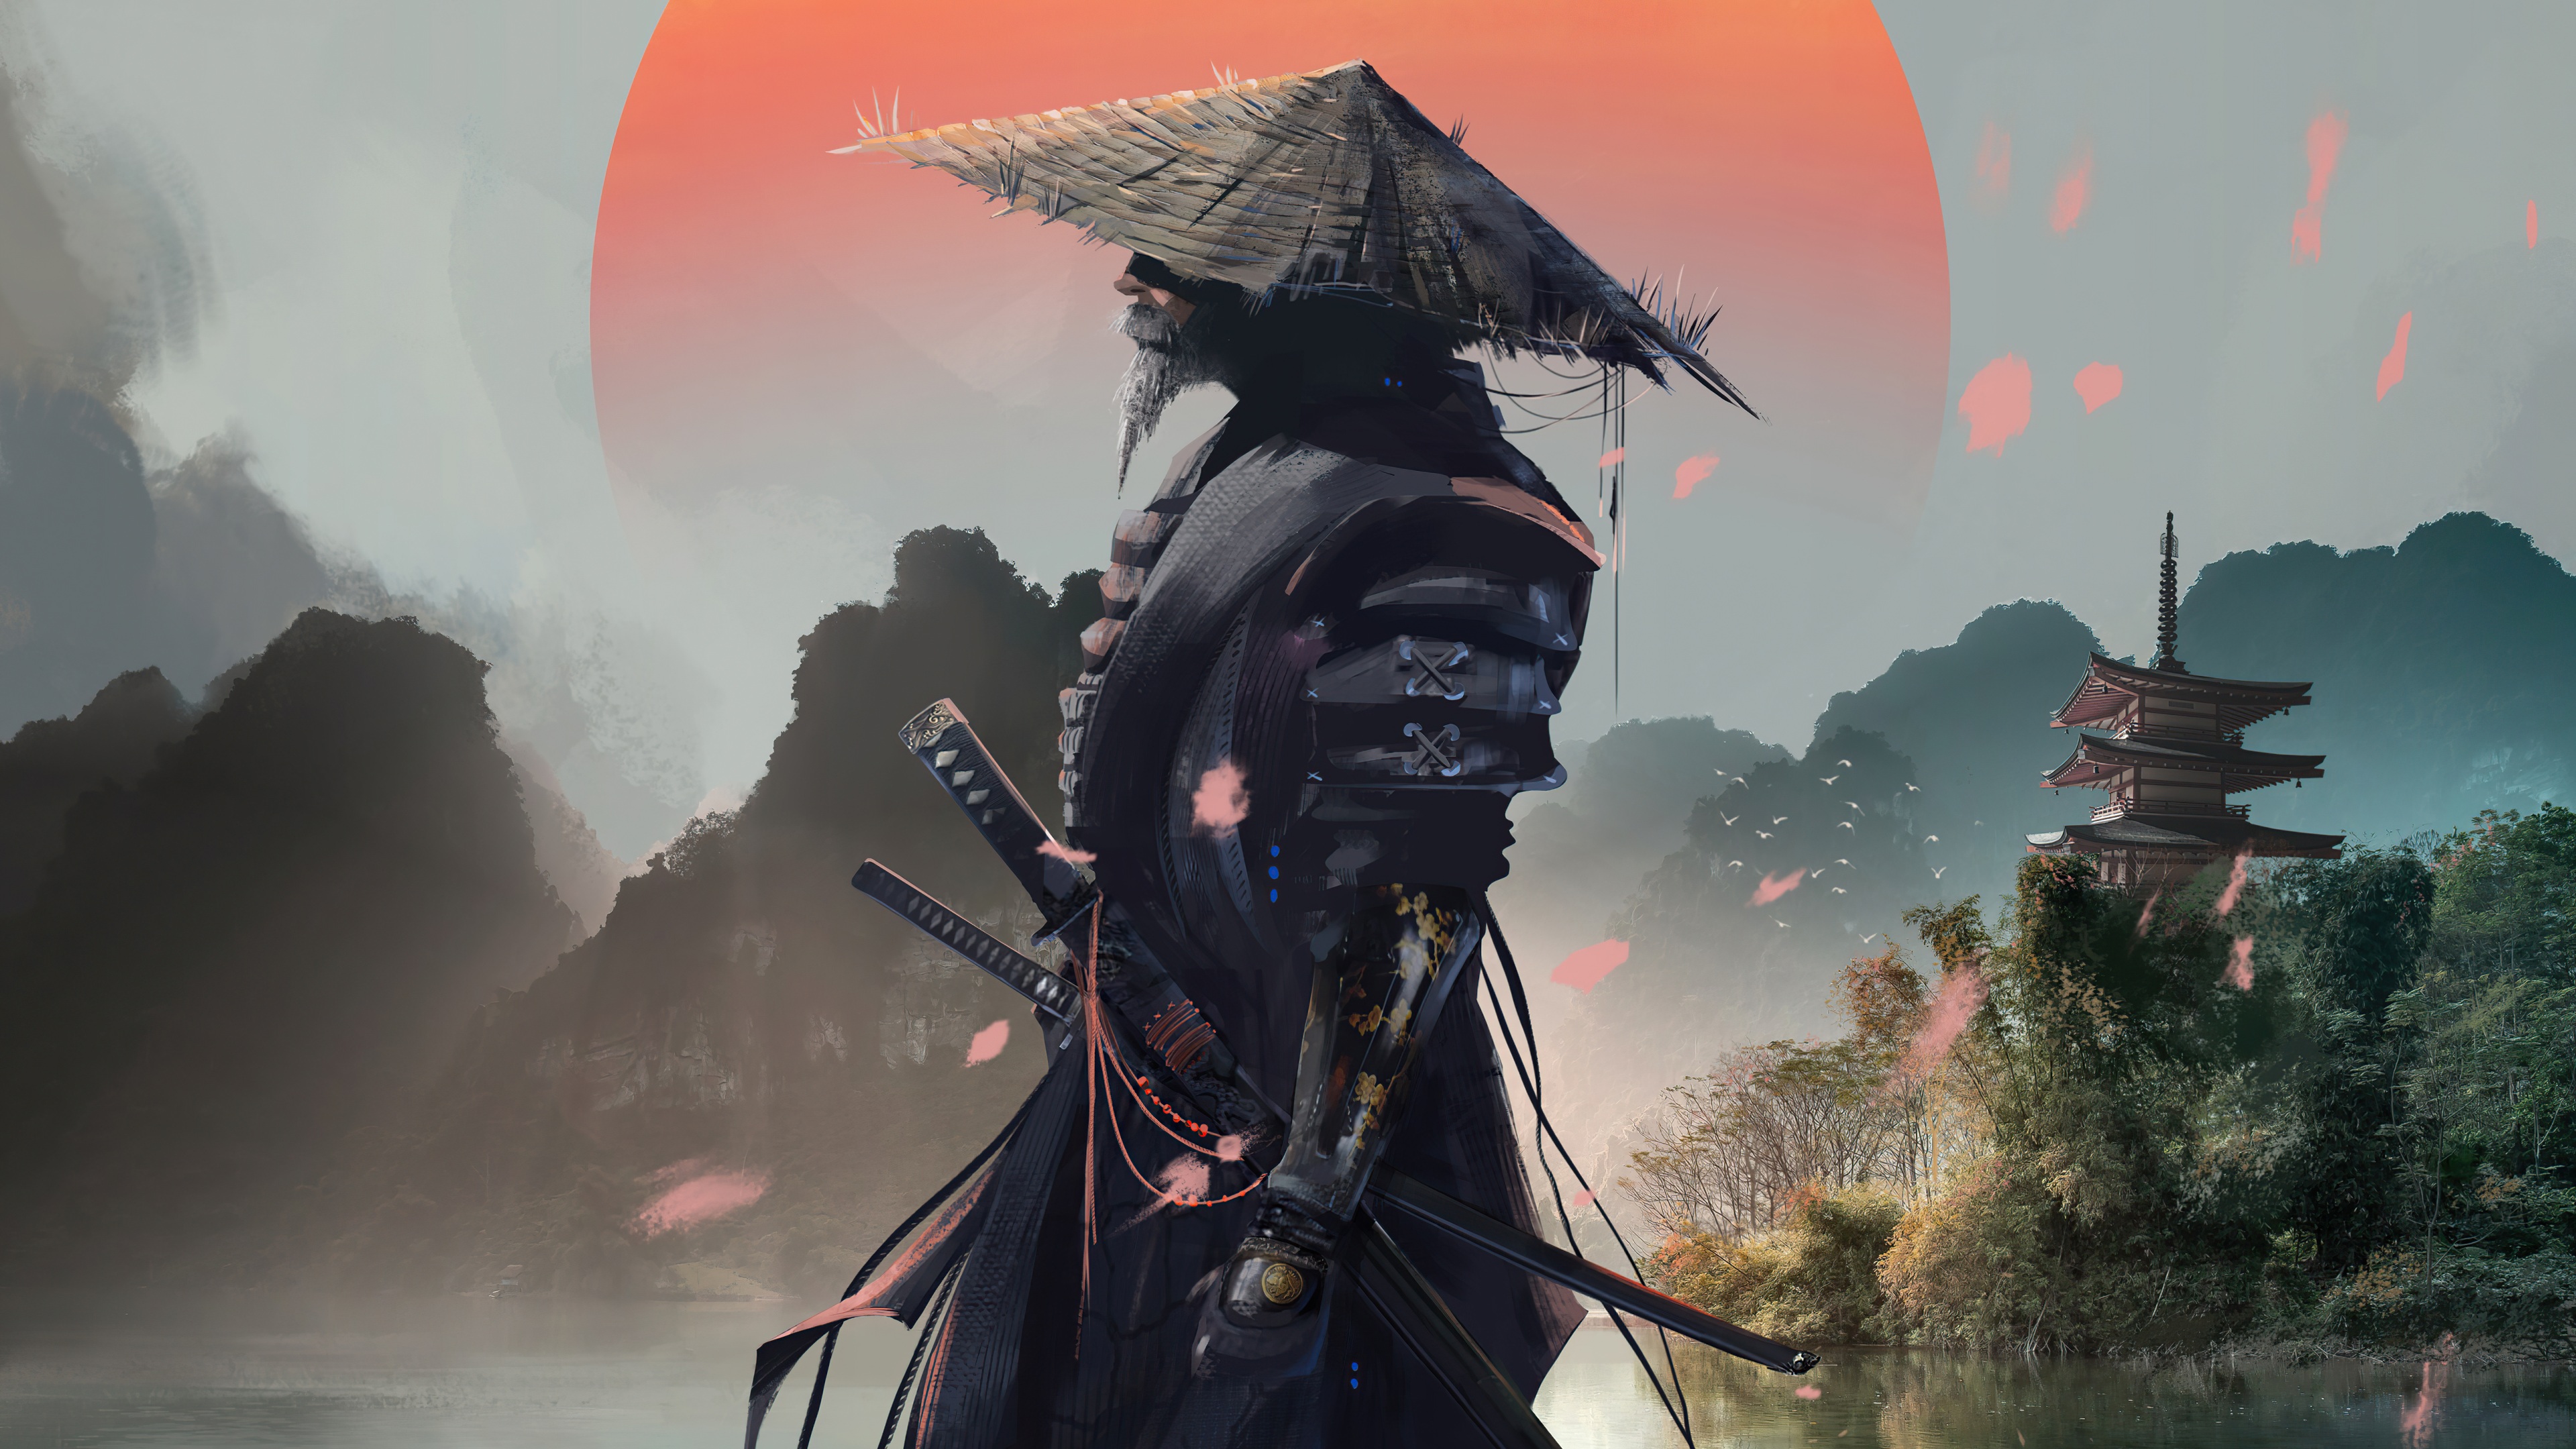 Samurai với bộ giáp truyền thống và kiếm sắc bén đã trở thành một biểu tượng trong lịch sử của Nhật Bản. Hình ảnh này sẽ khiến bạn lại tái hiện được vẻ đẹp oai hùng của Samurai trong đầu mình.